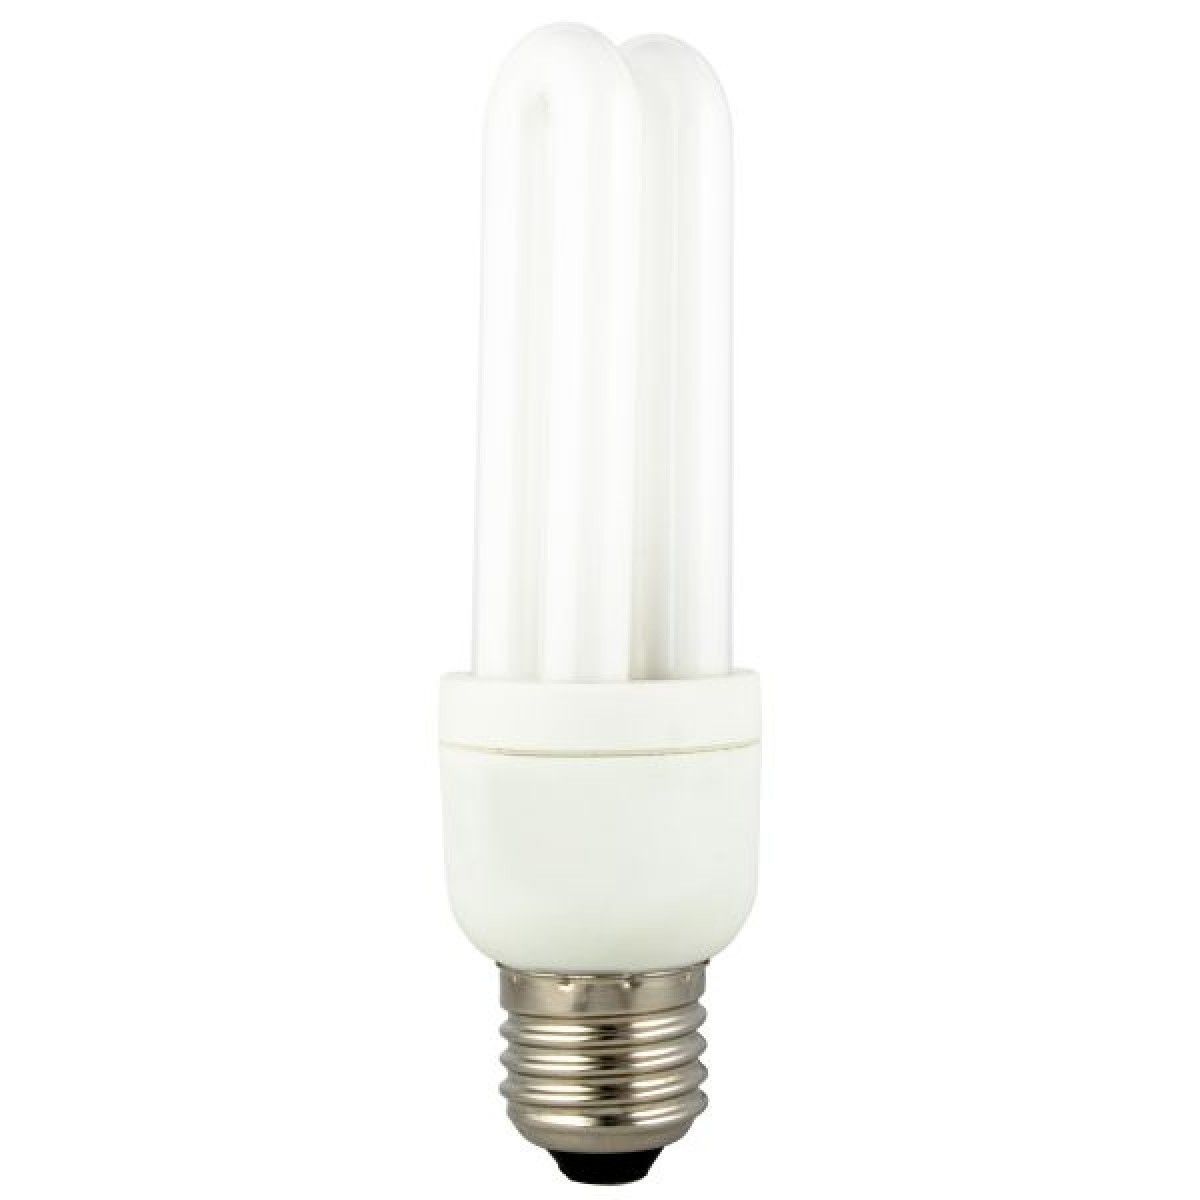 Verkoop :: Verlichting :: Lichtbronnen :: Spaarlampen :: SPAARLAMP E27 - JSK handelsonderneming